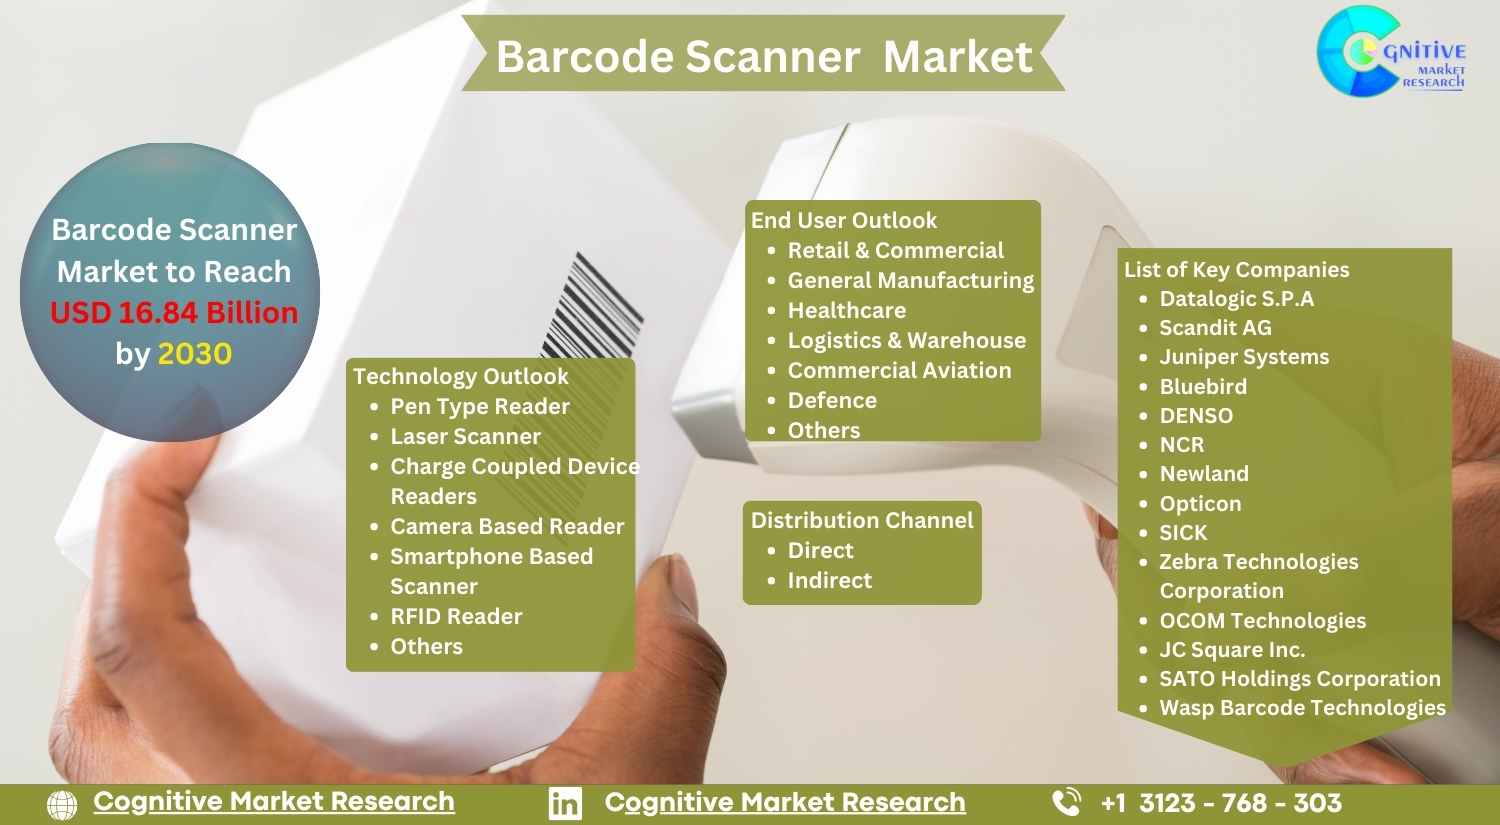 Barcode Scanner Market to Reach USD 16.84 Billion by 2030